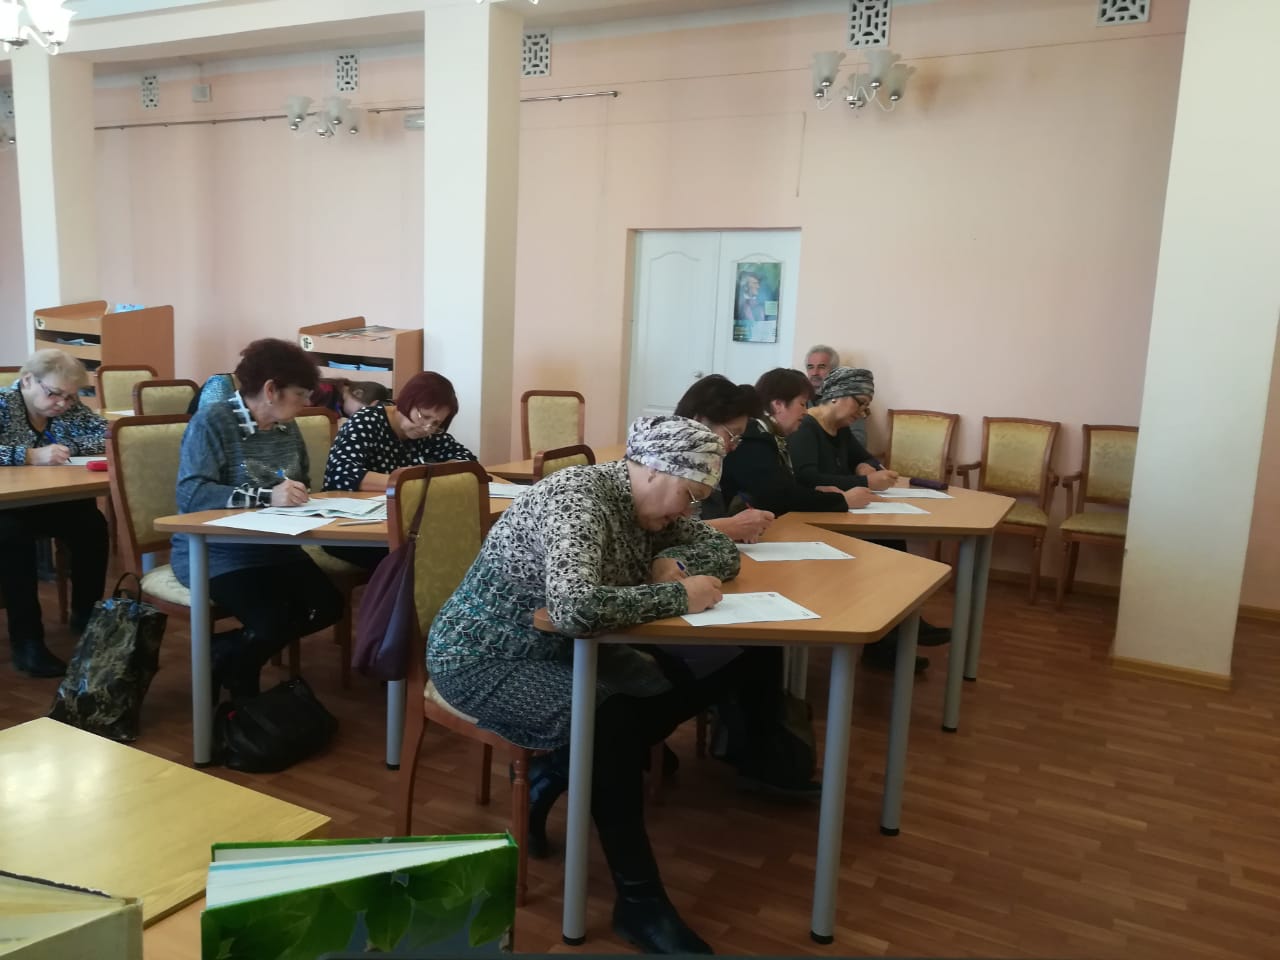 11 краснотурьинцев написали диктант на татарском языке 